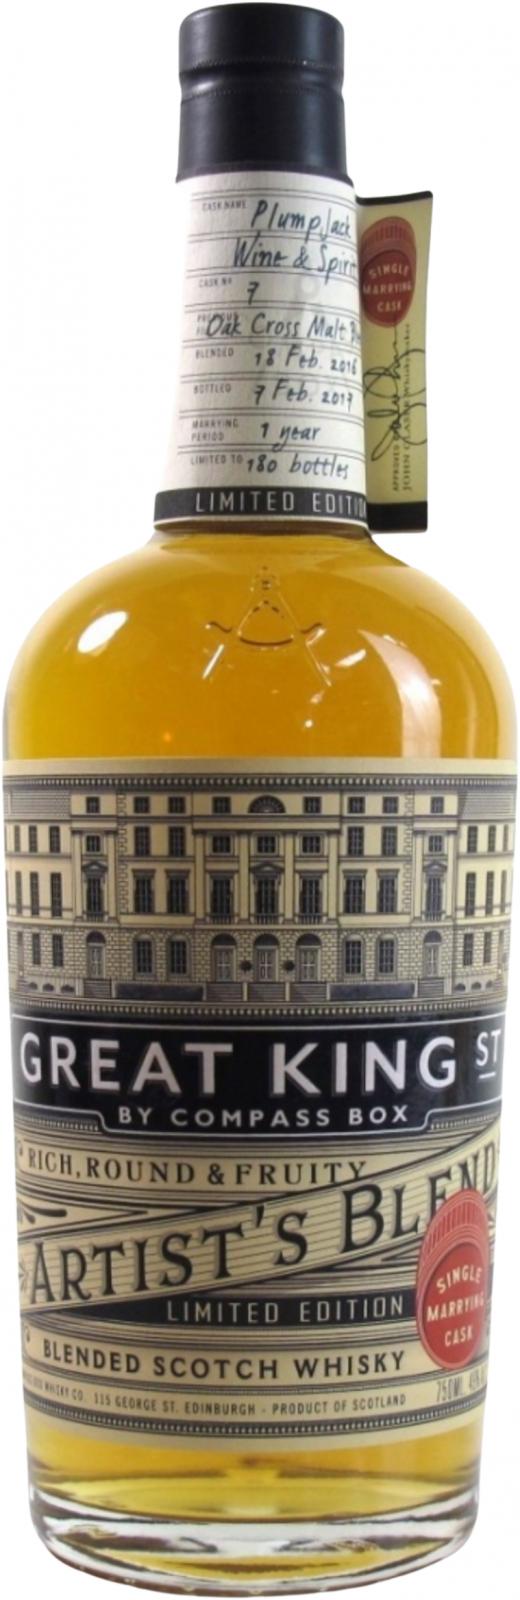 Great King Street Artist's Blend Single Marrying Cask Limited Edition Oak cross malt blend Plumpjack Wine & Spirits 49% 750ml